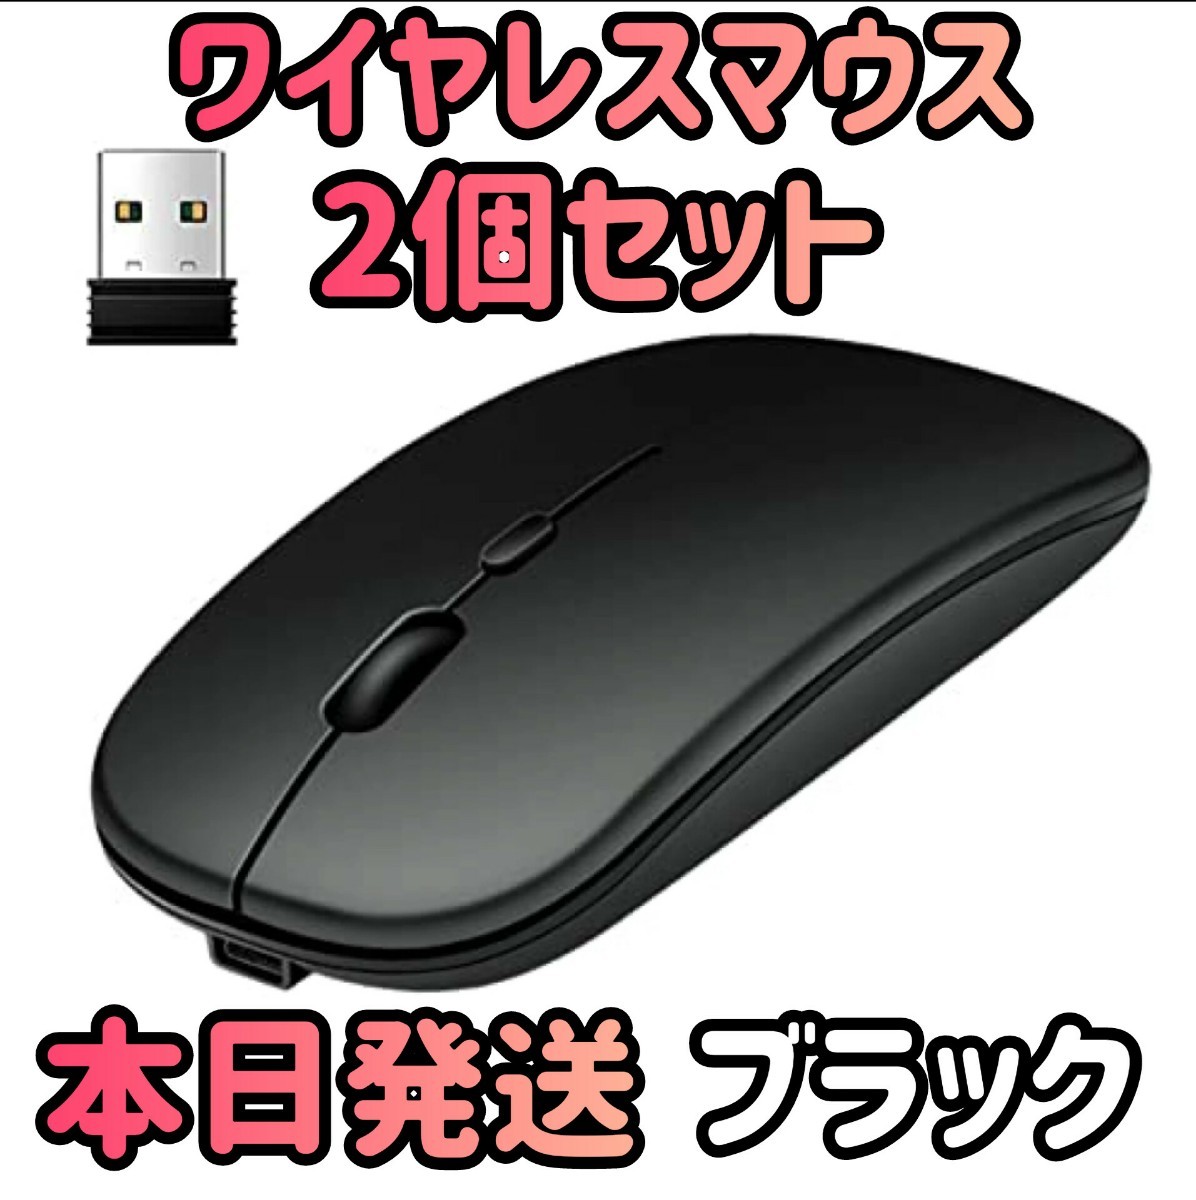  беспроводная мышь 2 шт. комплект черный Bluetooth мышь мышь Bluetooth5.1 супер тонкий тихий звук 2.4G мышь персональный компьютер мышь ge-ming мышь 